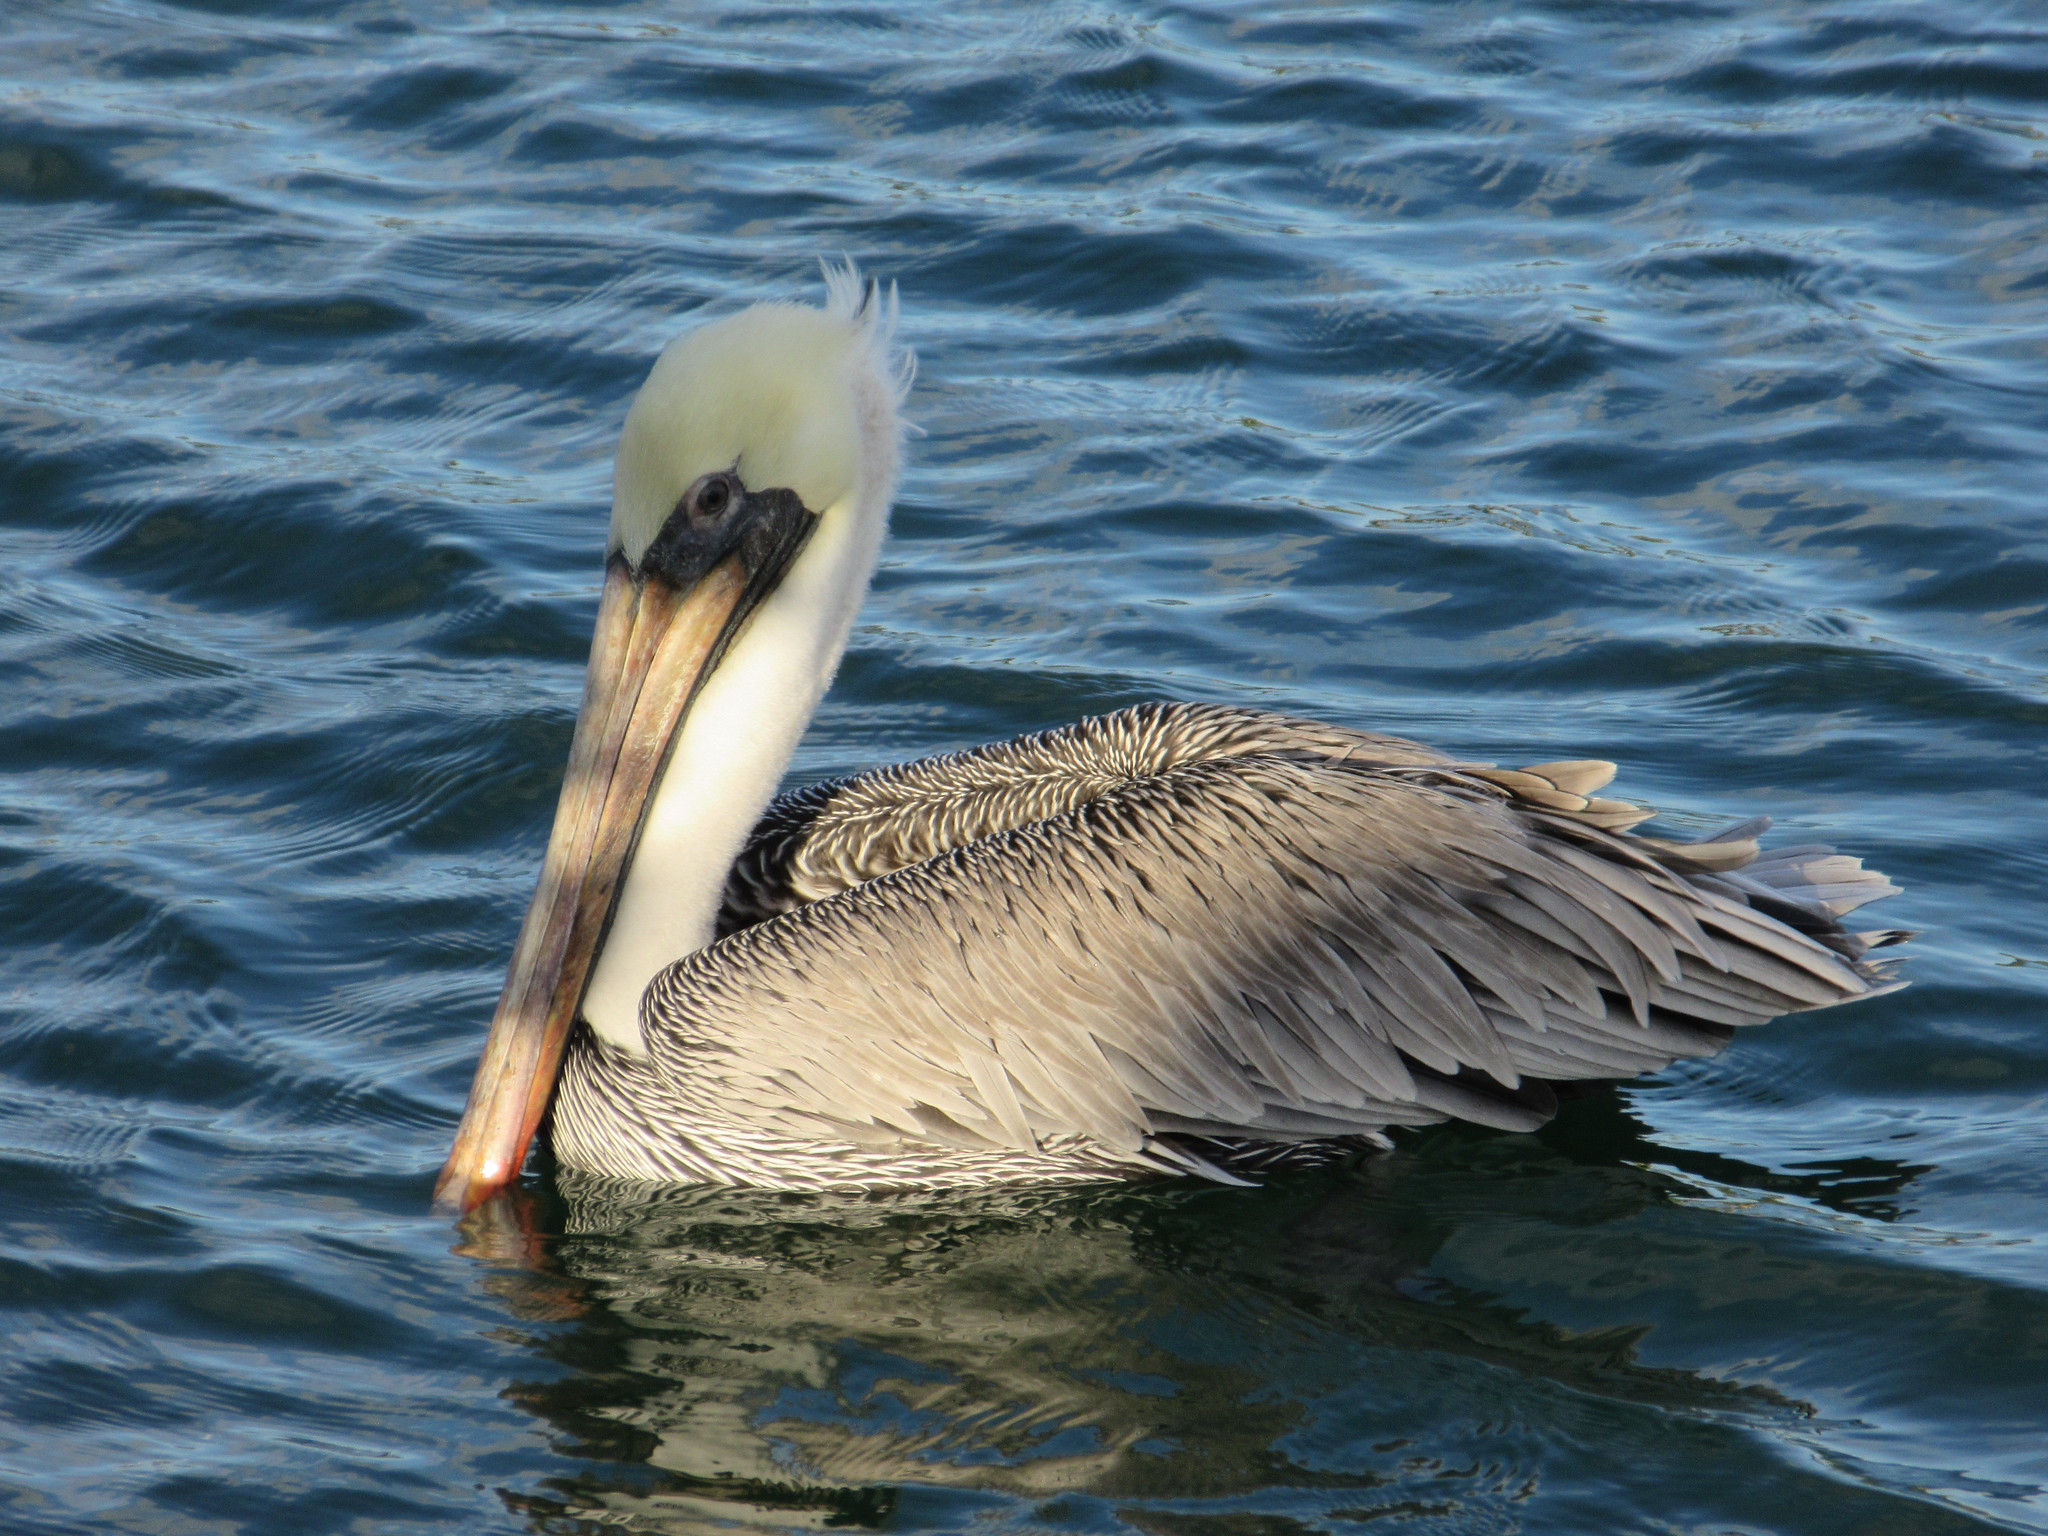 Brown Pelican, Bahia Honda State Park, Florida, United States, 28 December 2019